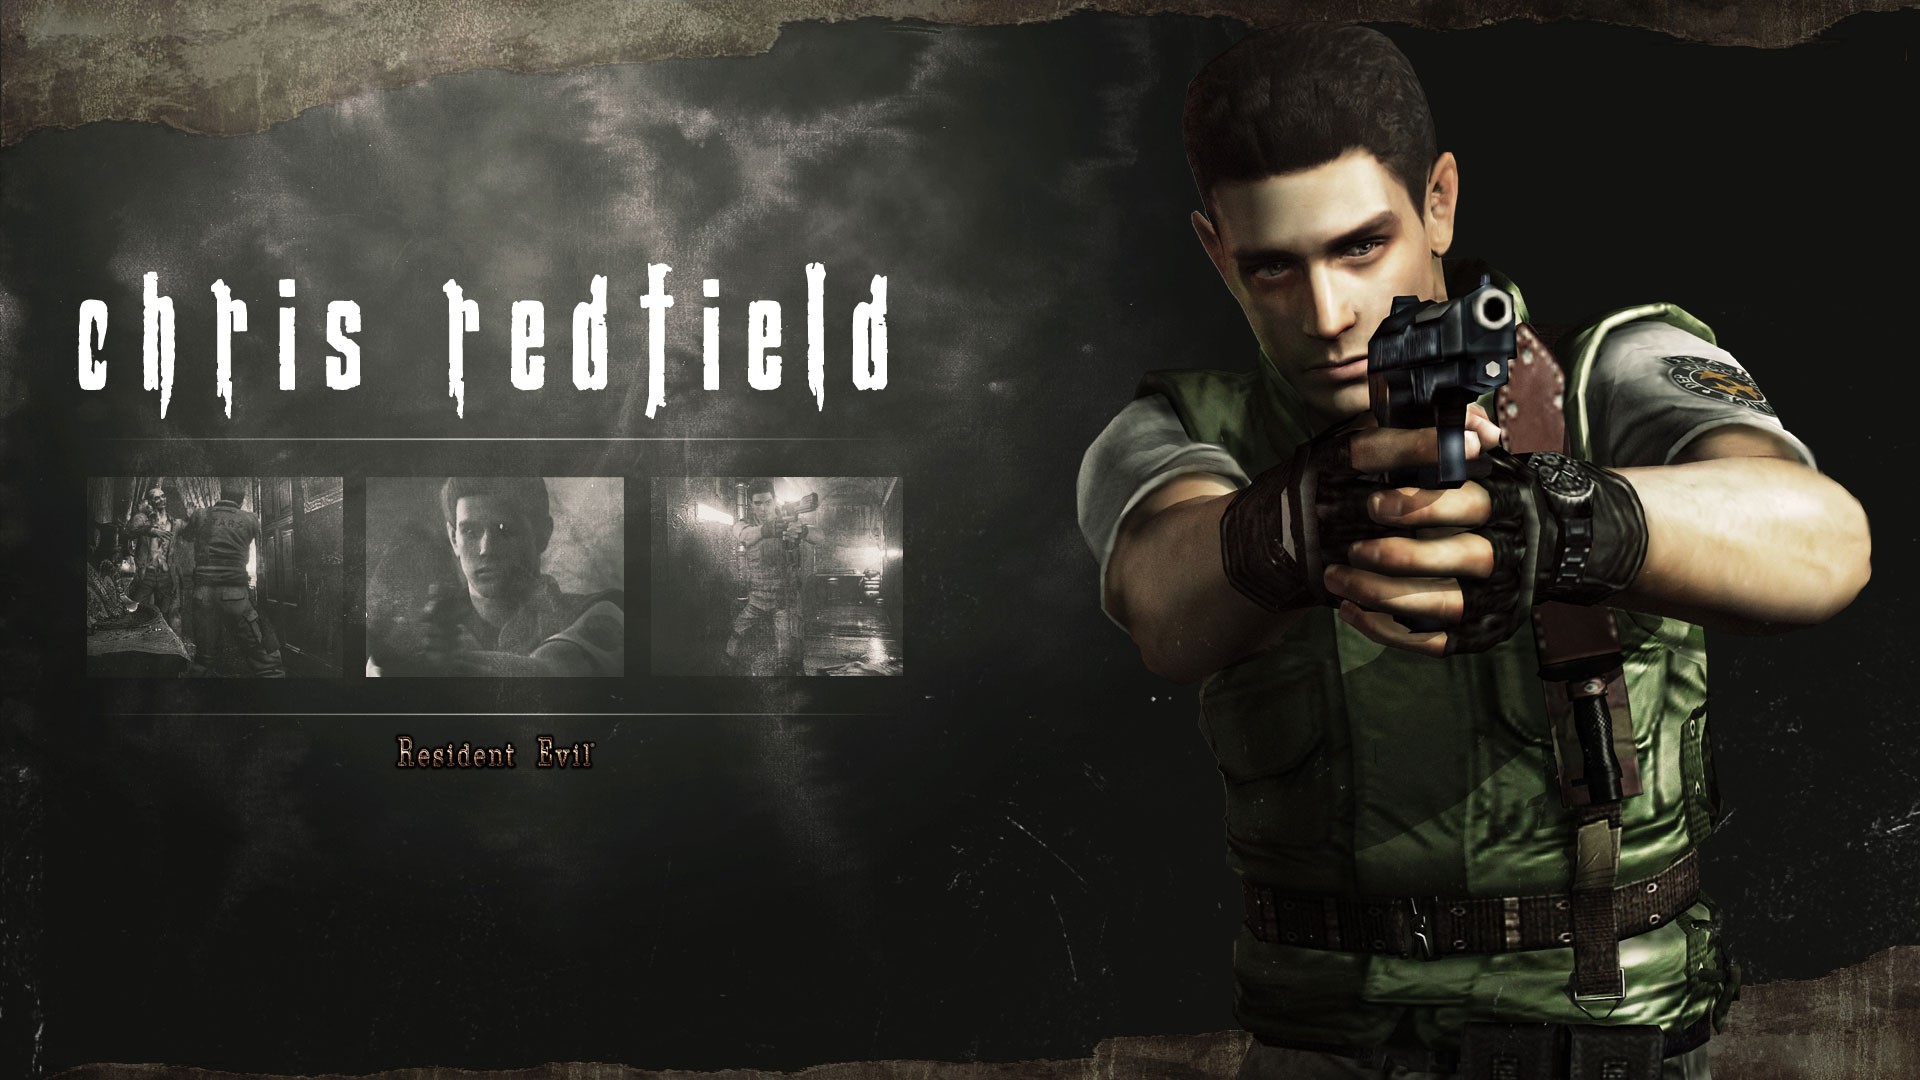 Resident Evil Resident Evil HD Remaster Chris Redfield 1920x1080